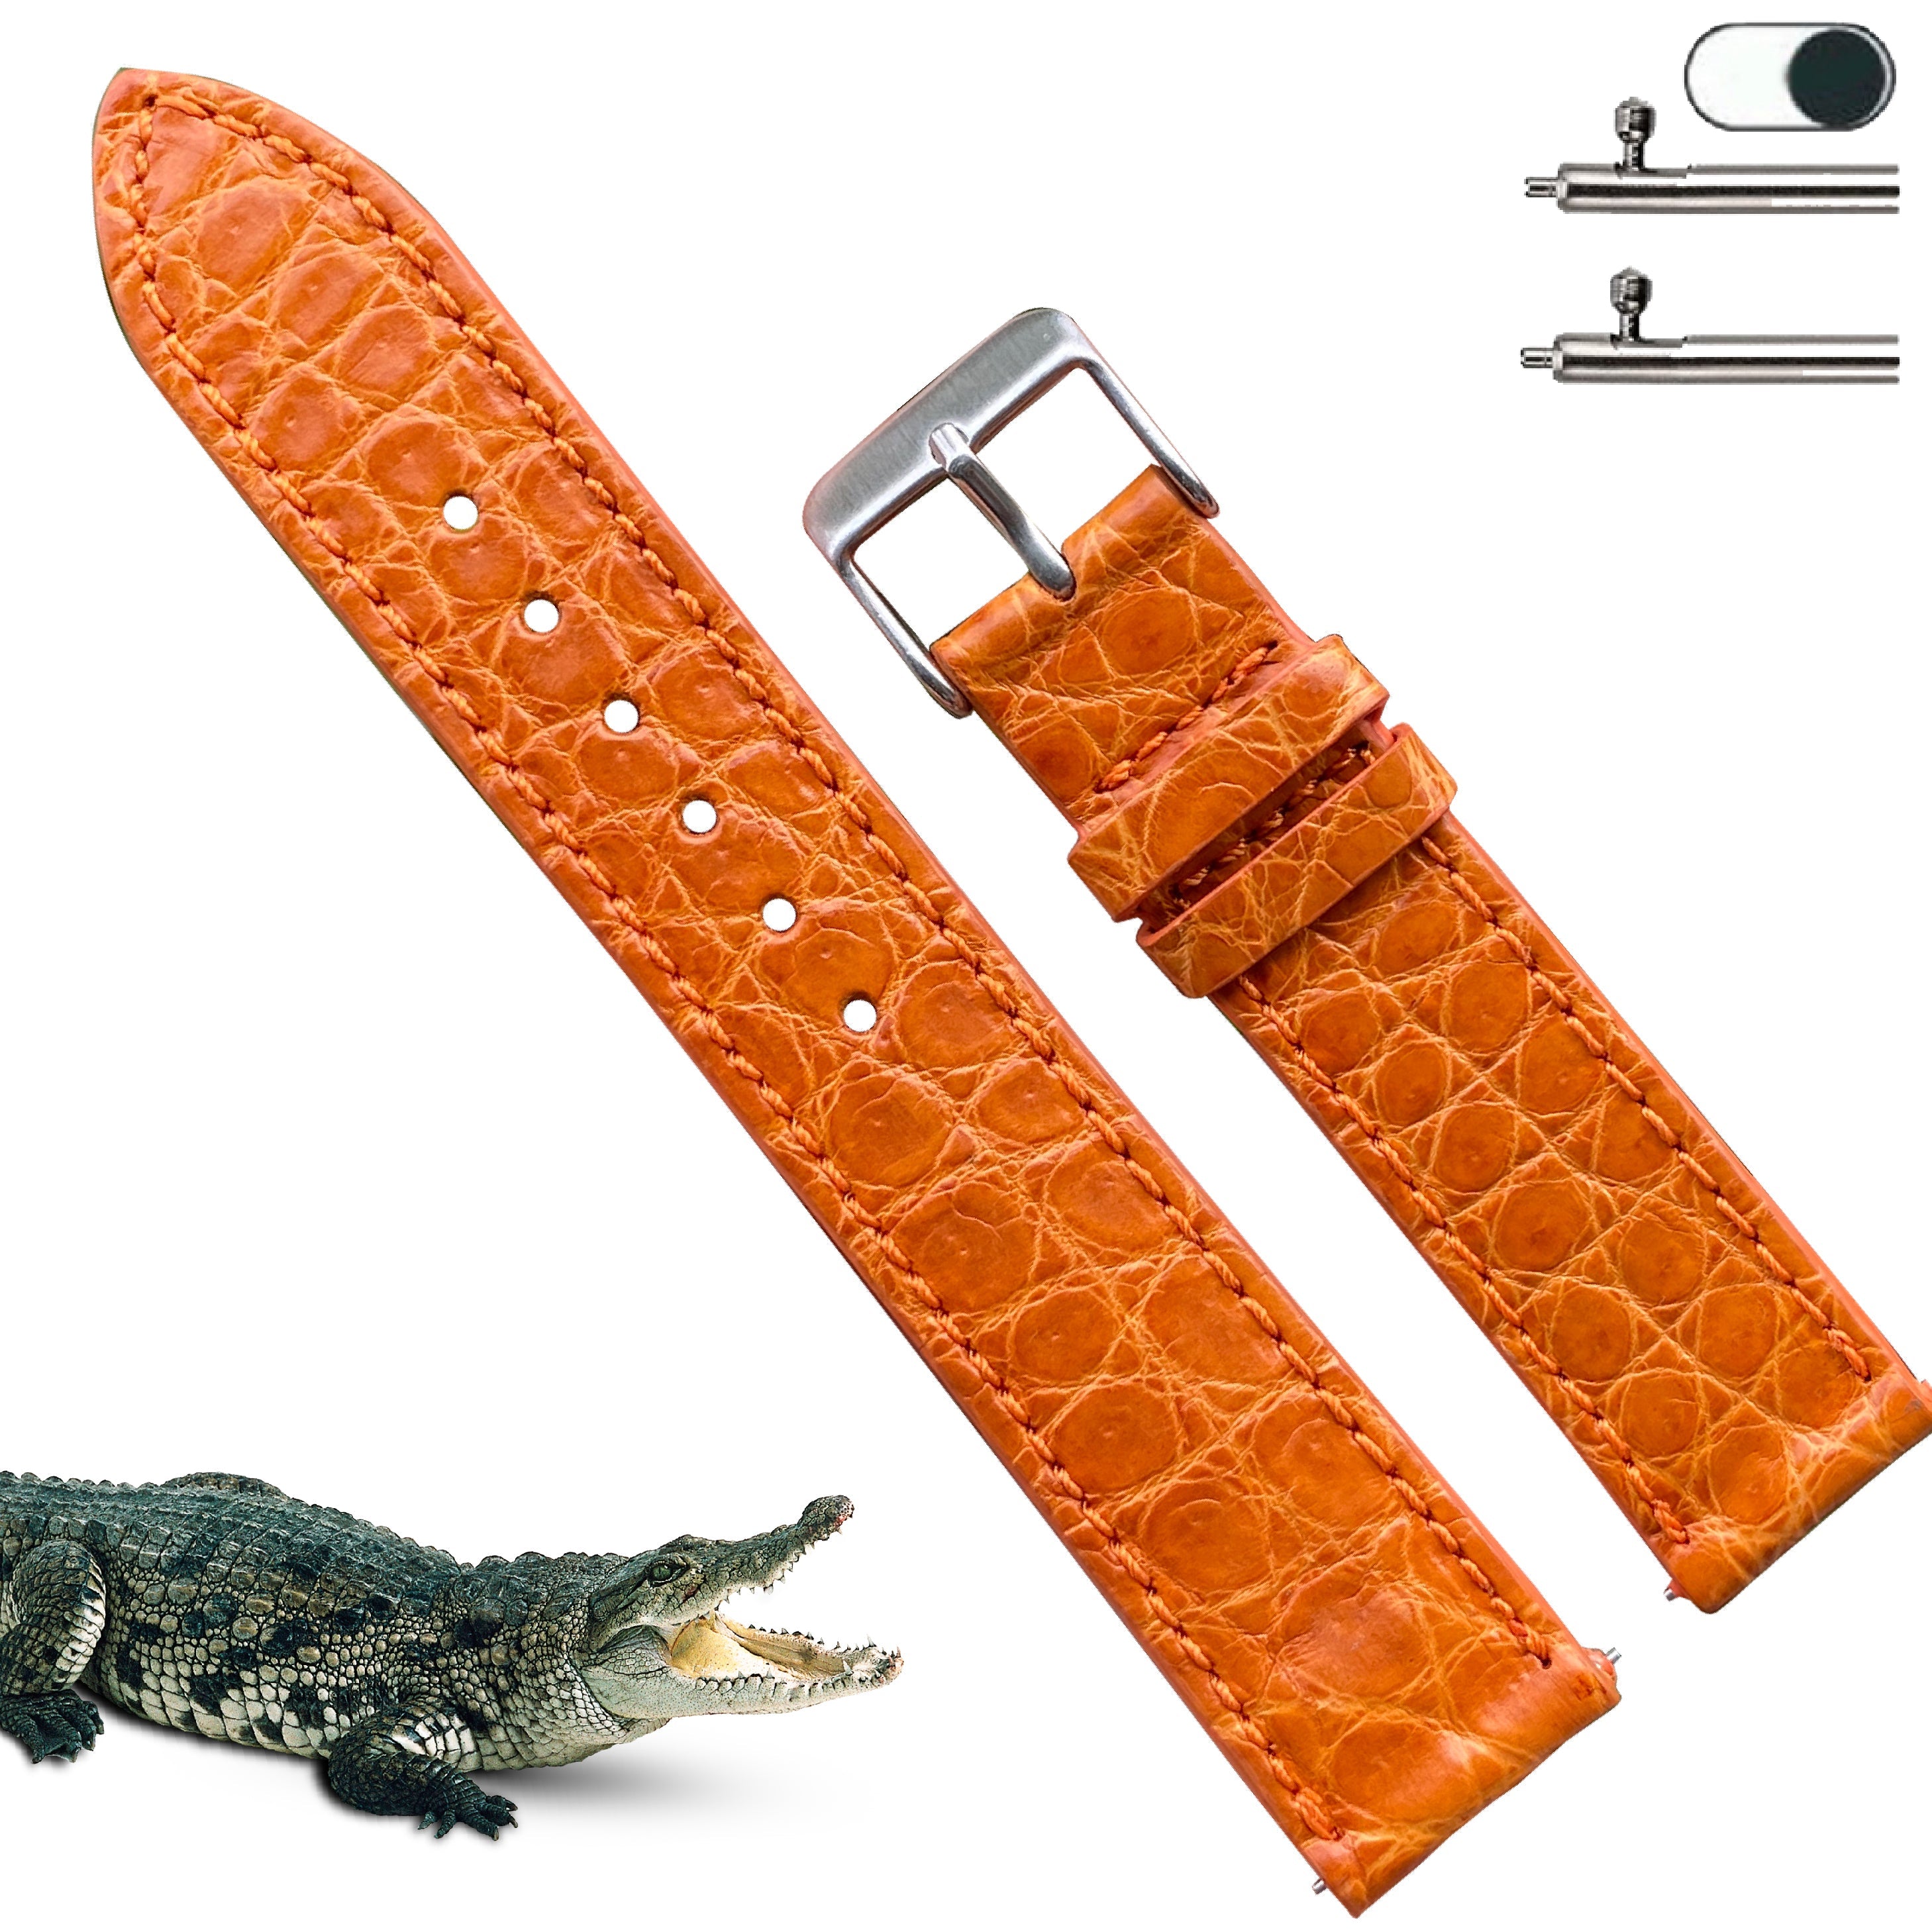 Alligator vs Crocodile for Watch Straps